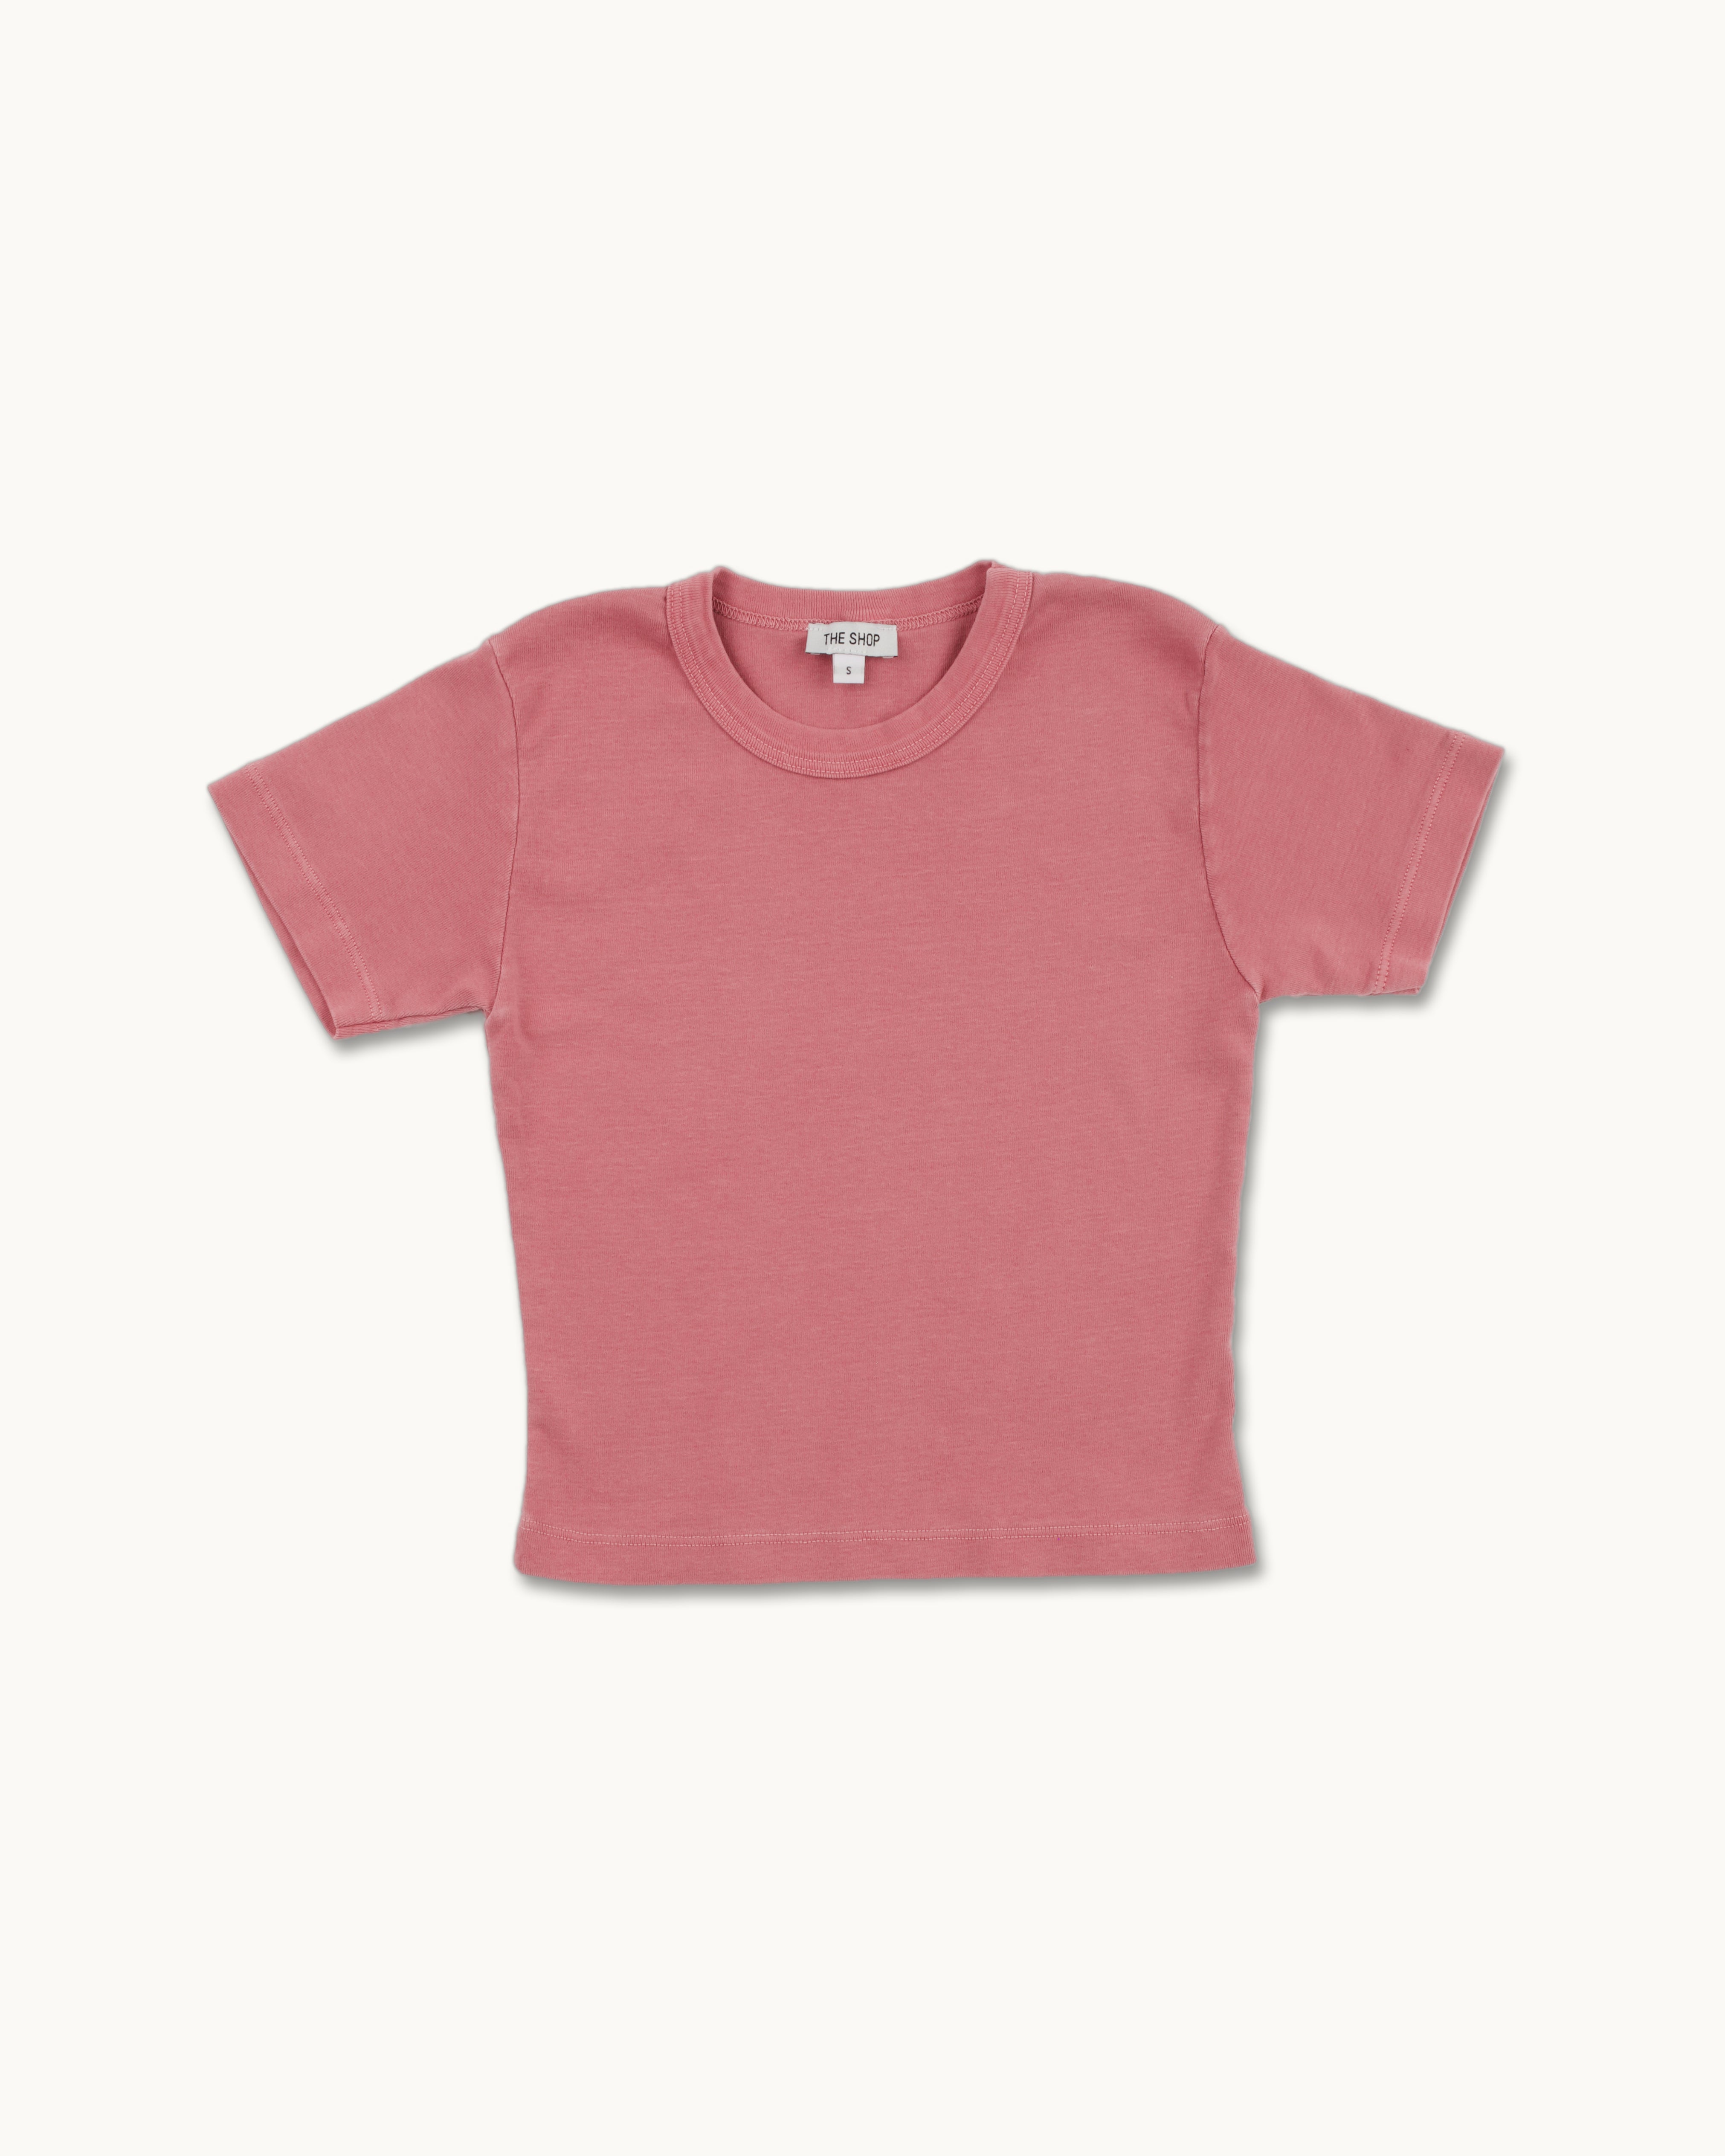 Ribbed Baby T-Shirt